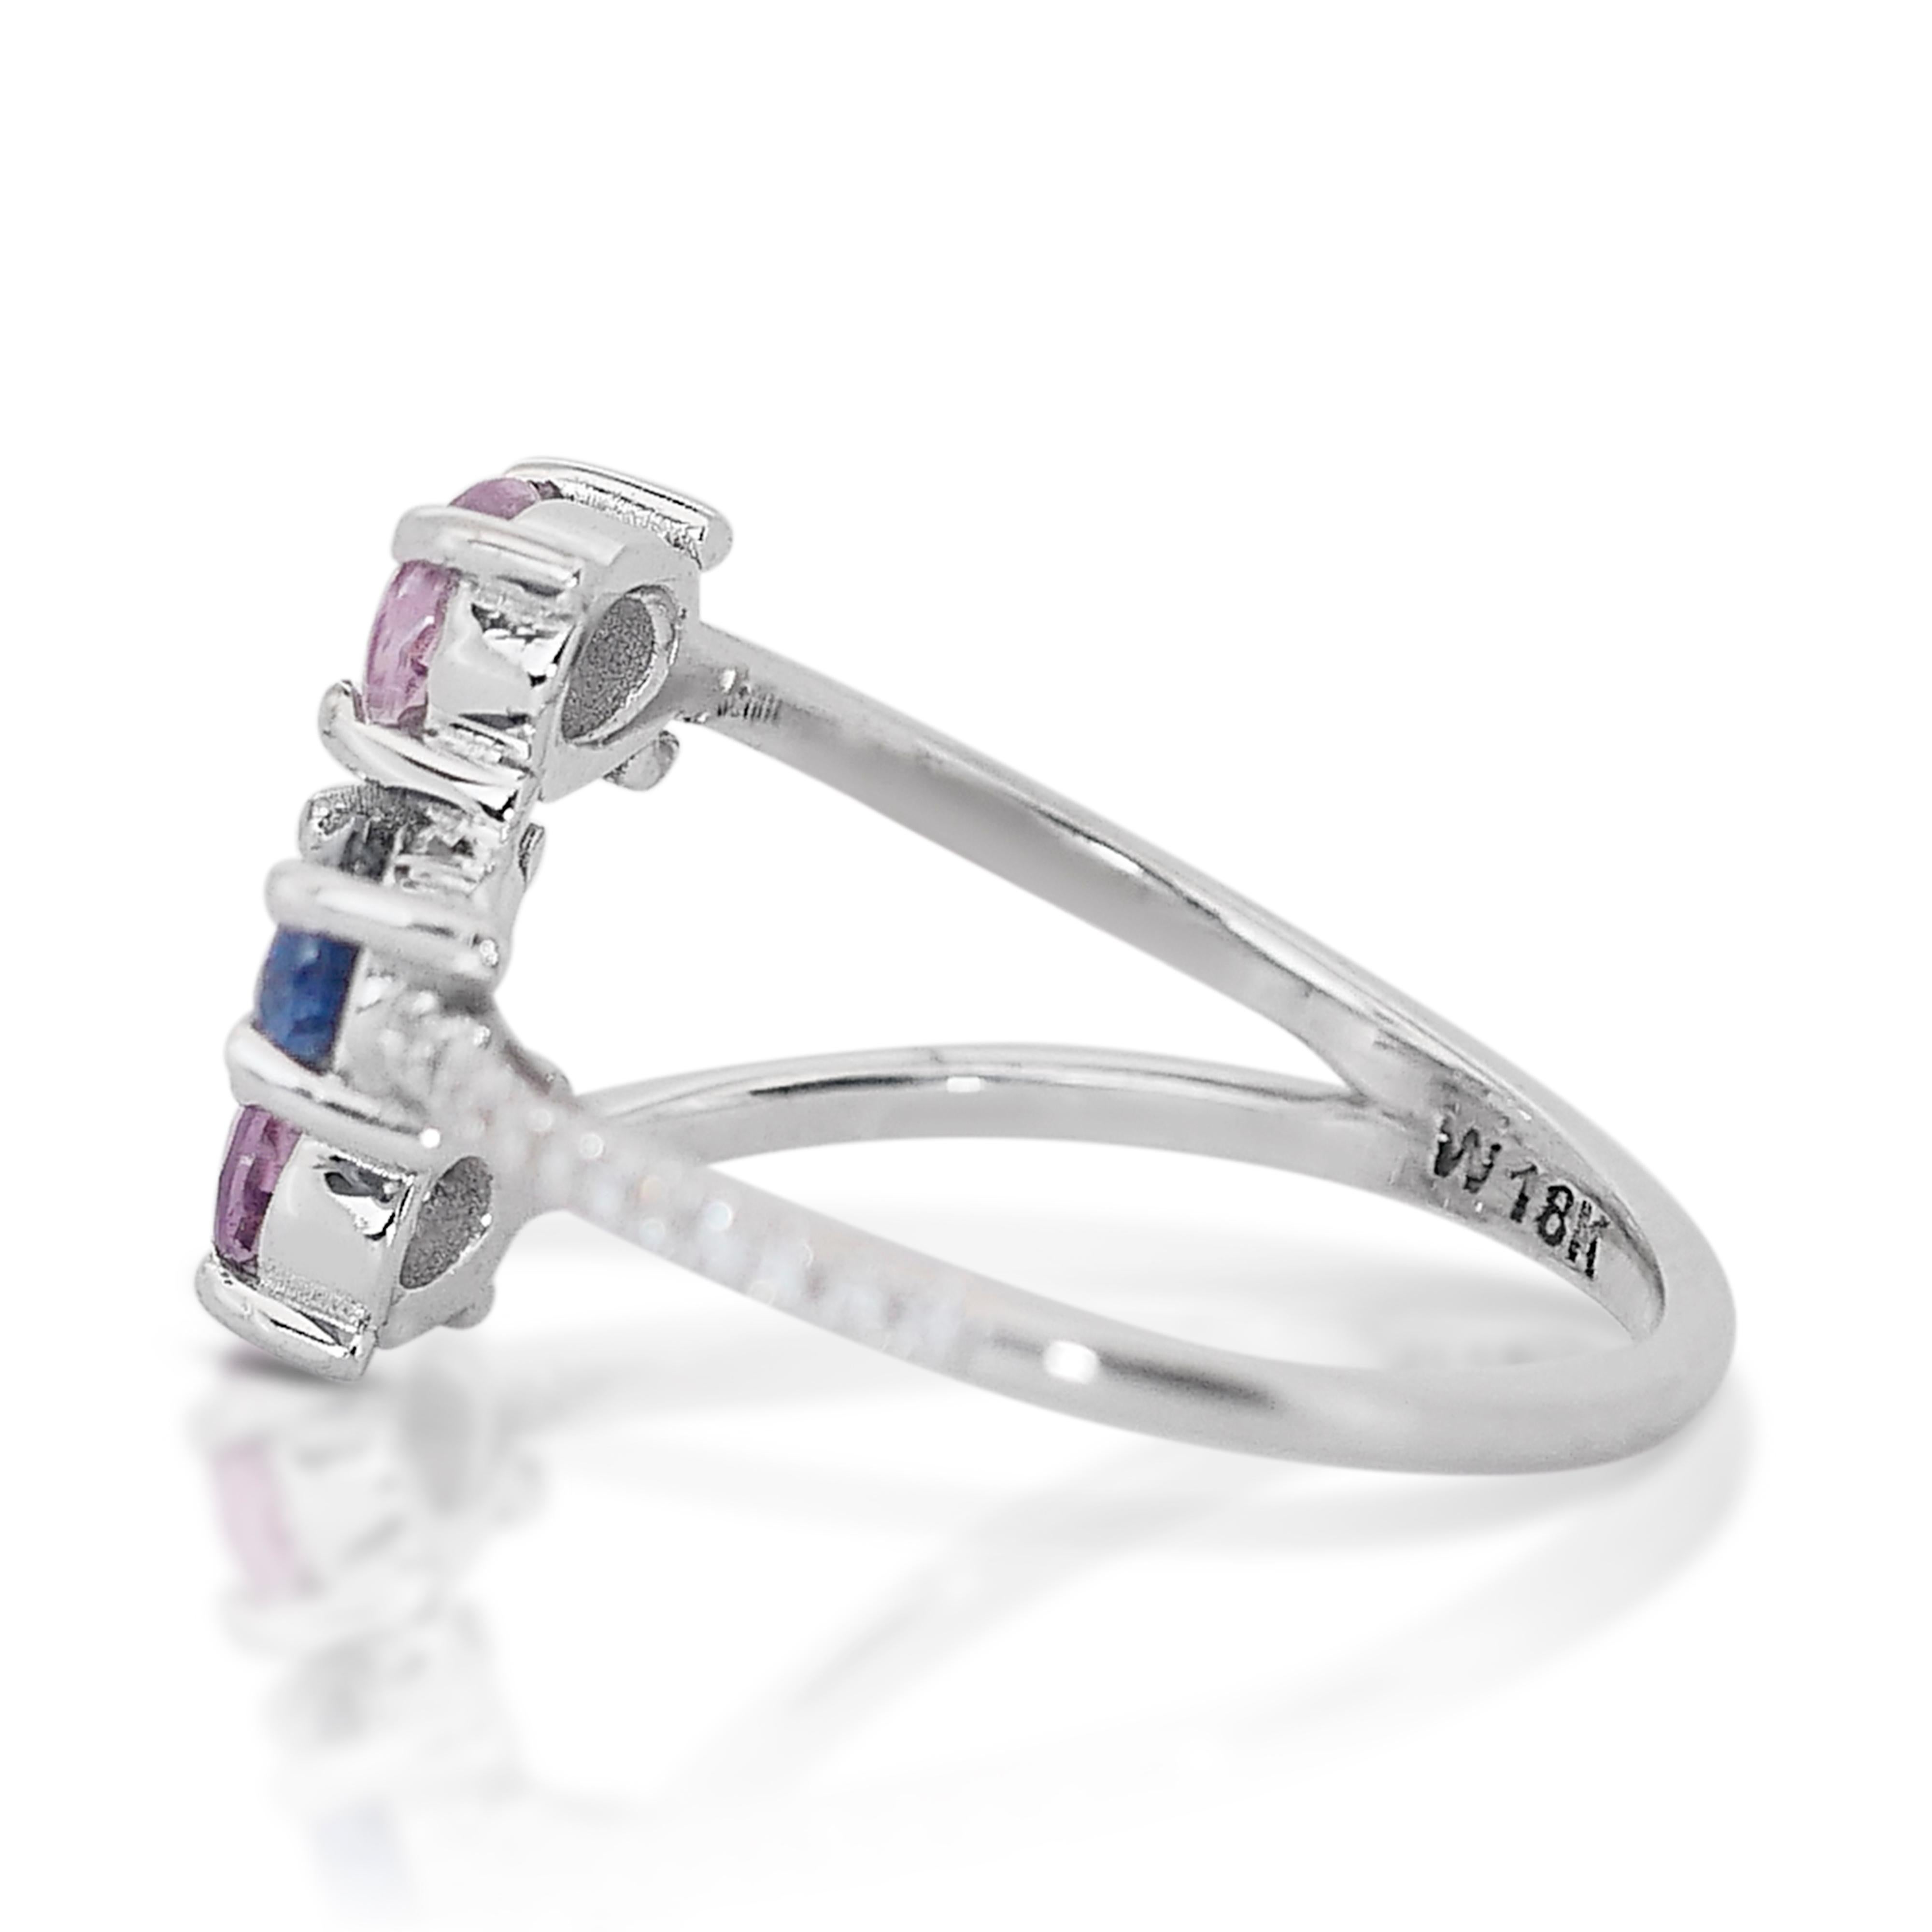 Stilvoller 1,17ct Saphiren und Diamanten Fancy-Colored Ring in 18k Weißgold - IGI zertifiziert

Entdecken Sie die bezaubernde Harmonie der Farben mit diesem farbenfrohen Ring, einer zarten Verschmelzung von Eleganz und leuchtenden Farbtönen. In der